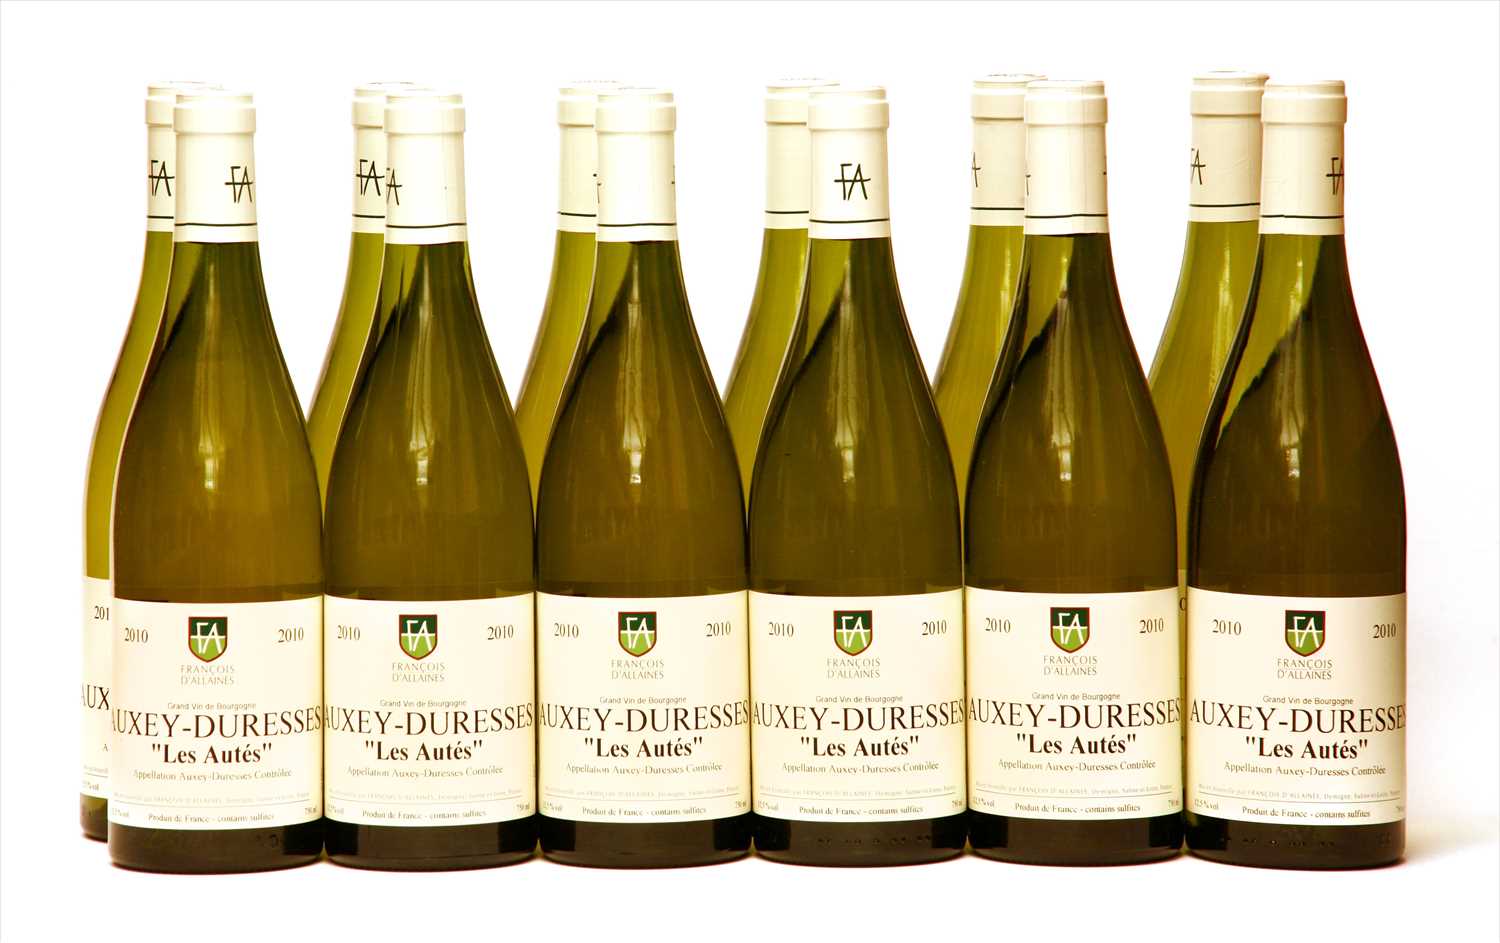 Lot 13 - François d'Allaines, Auxey-Duresses "Les Autés", 2010, twelve bottles (boxed)